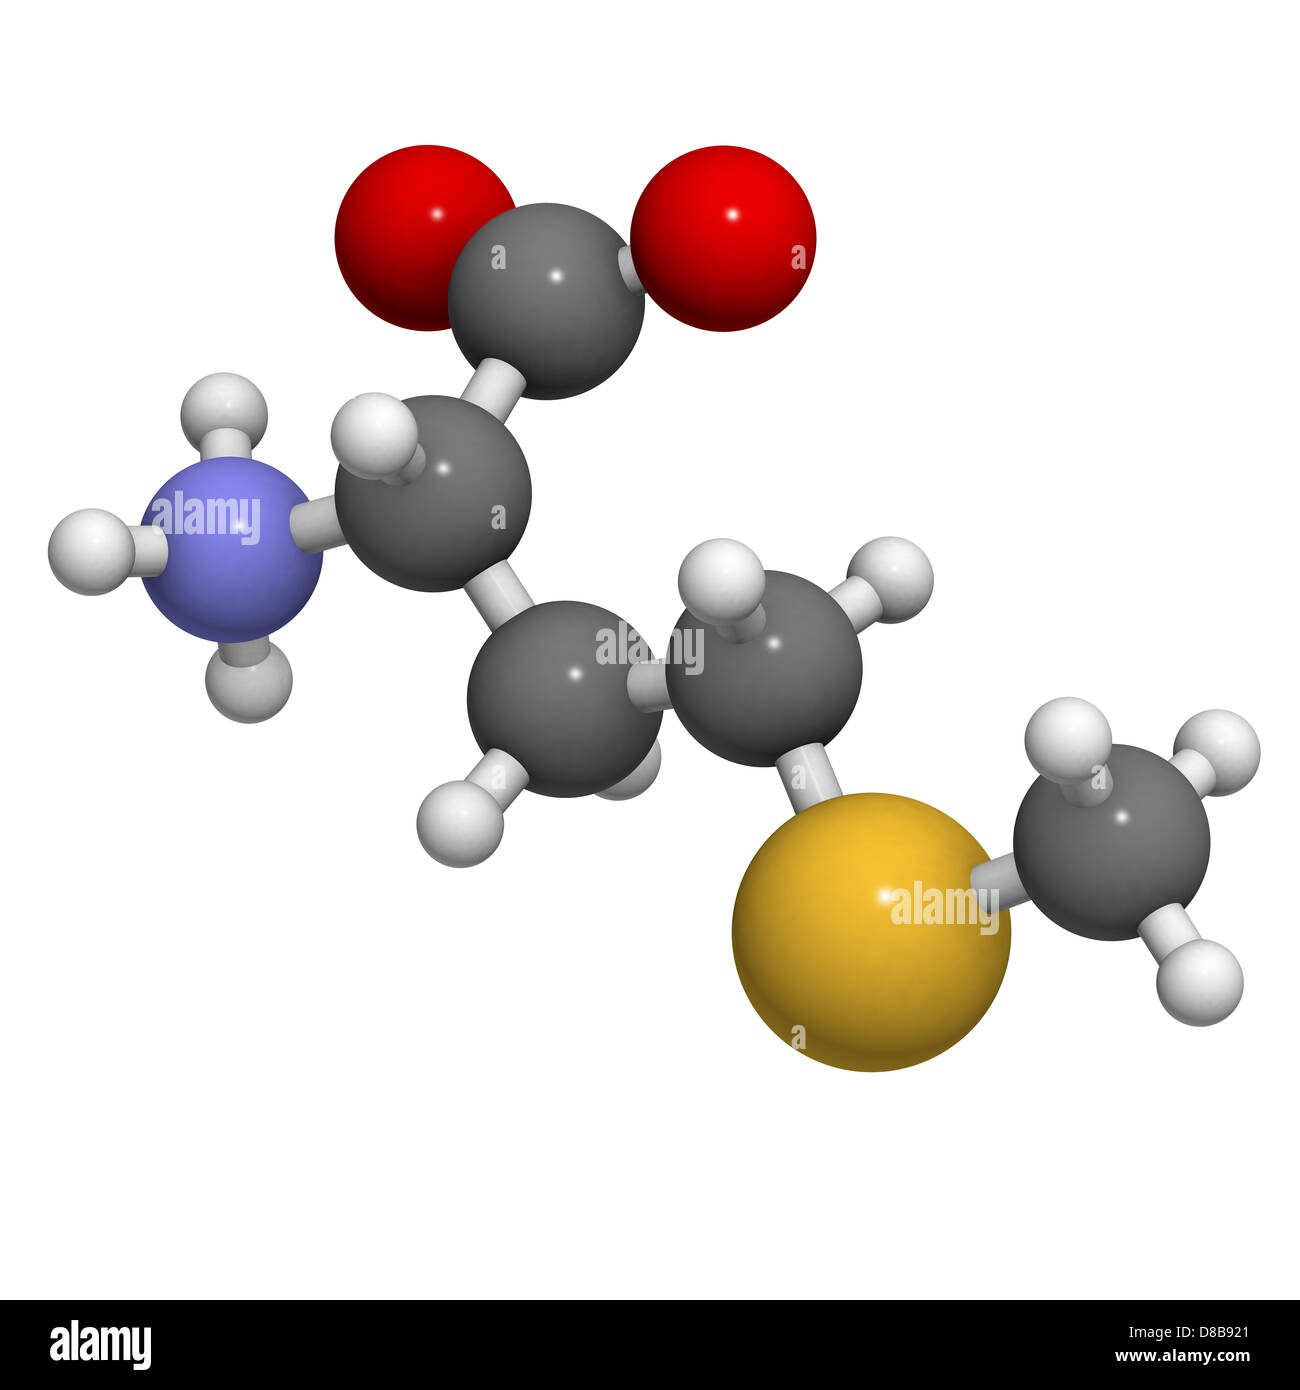 Aminosäure Methionin (Met, M), molekulare Modell. Aminosäuren sind die  Bausteine der Proteine Stockfotografie - Alamy